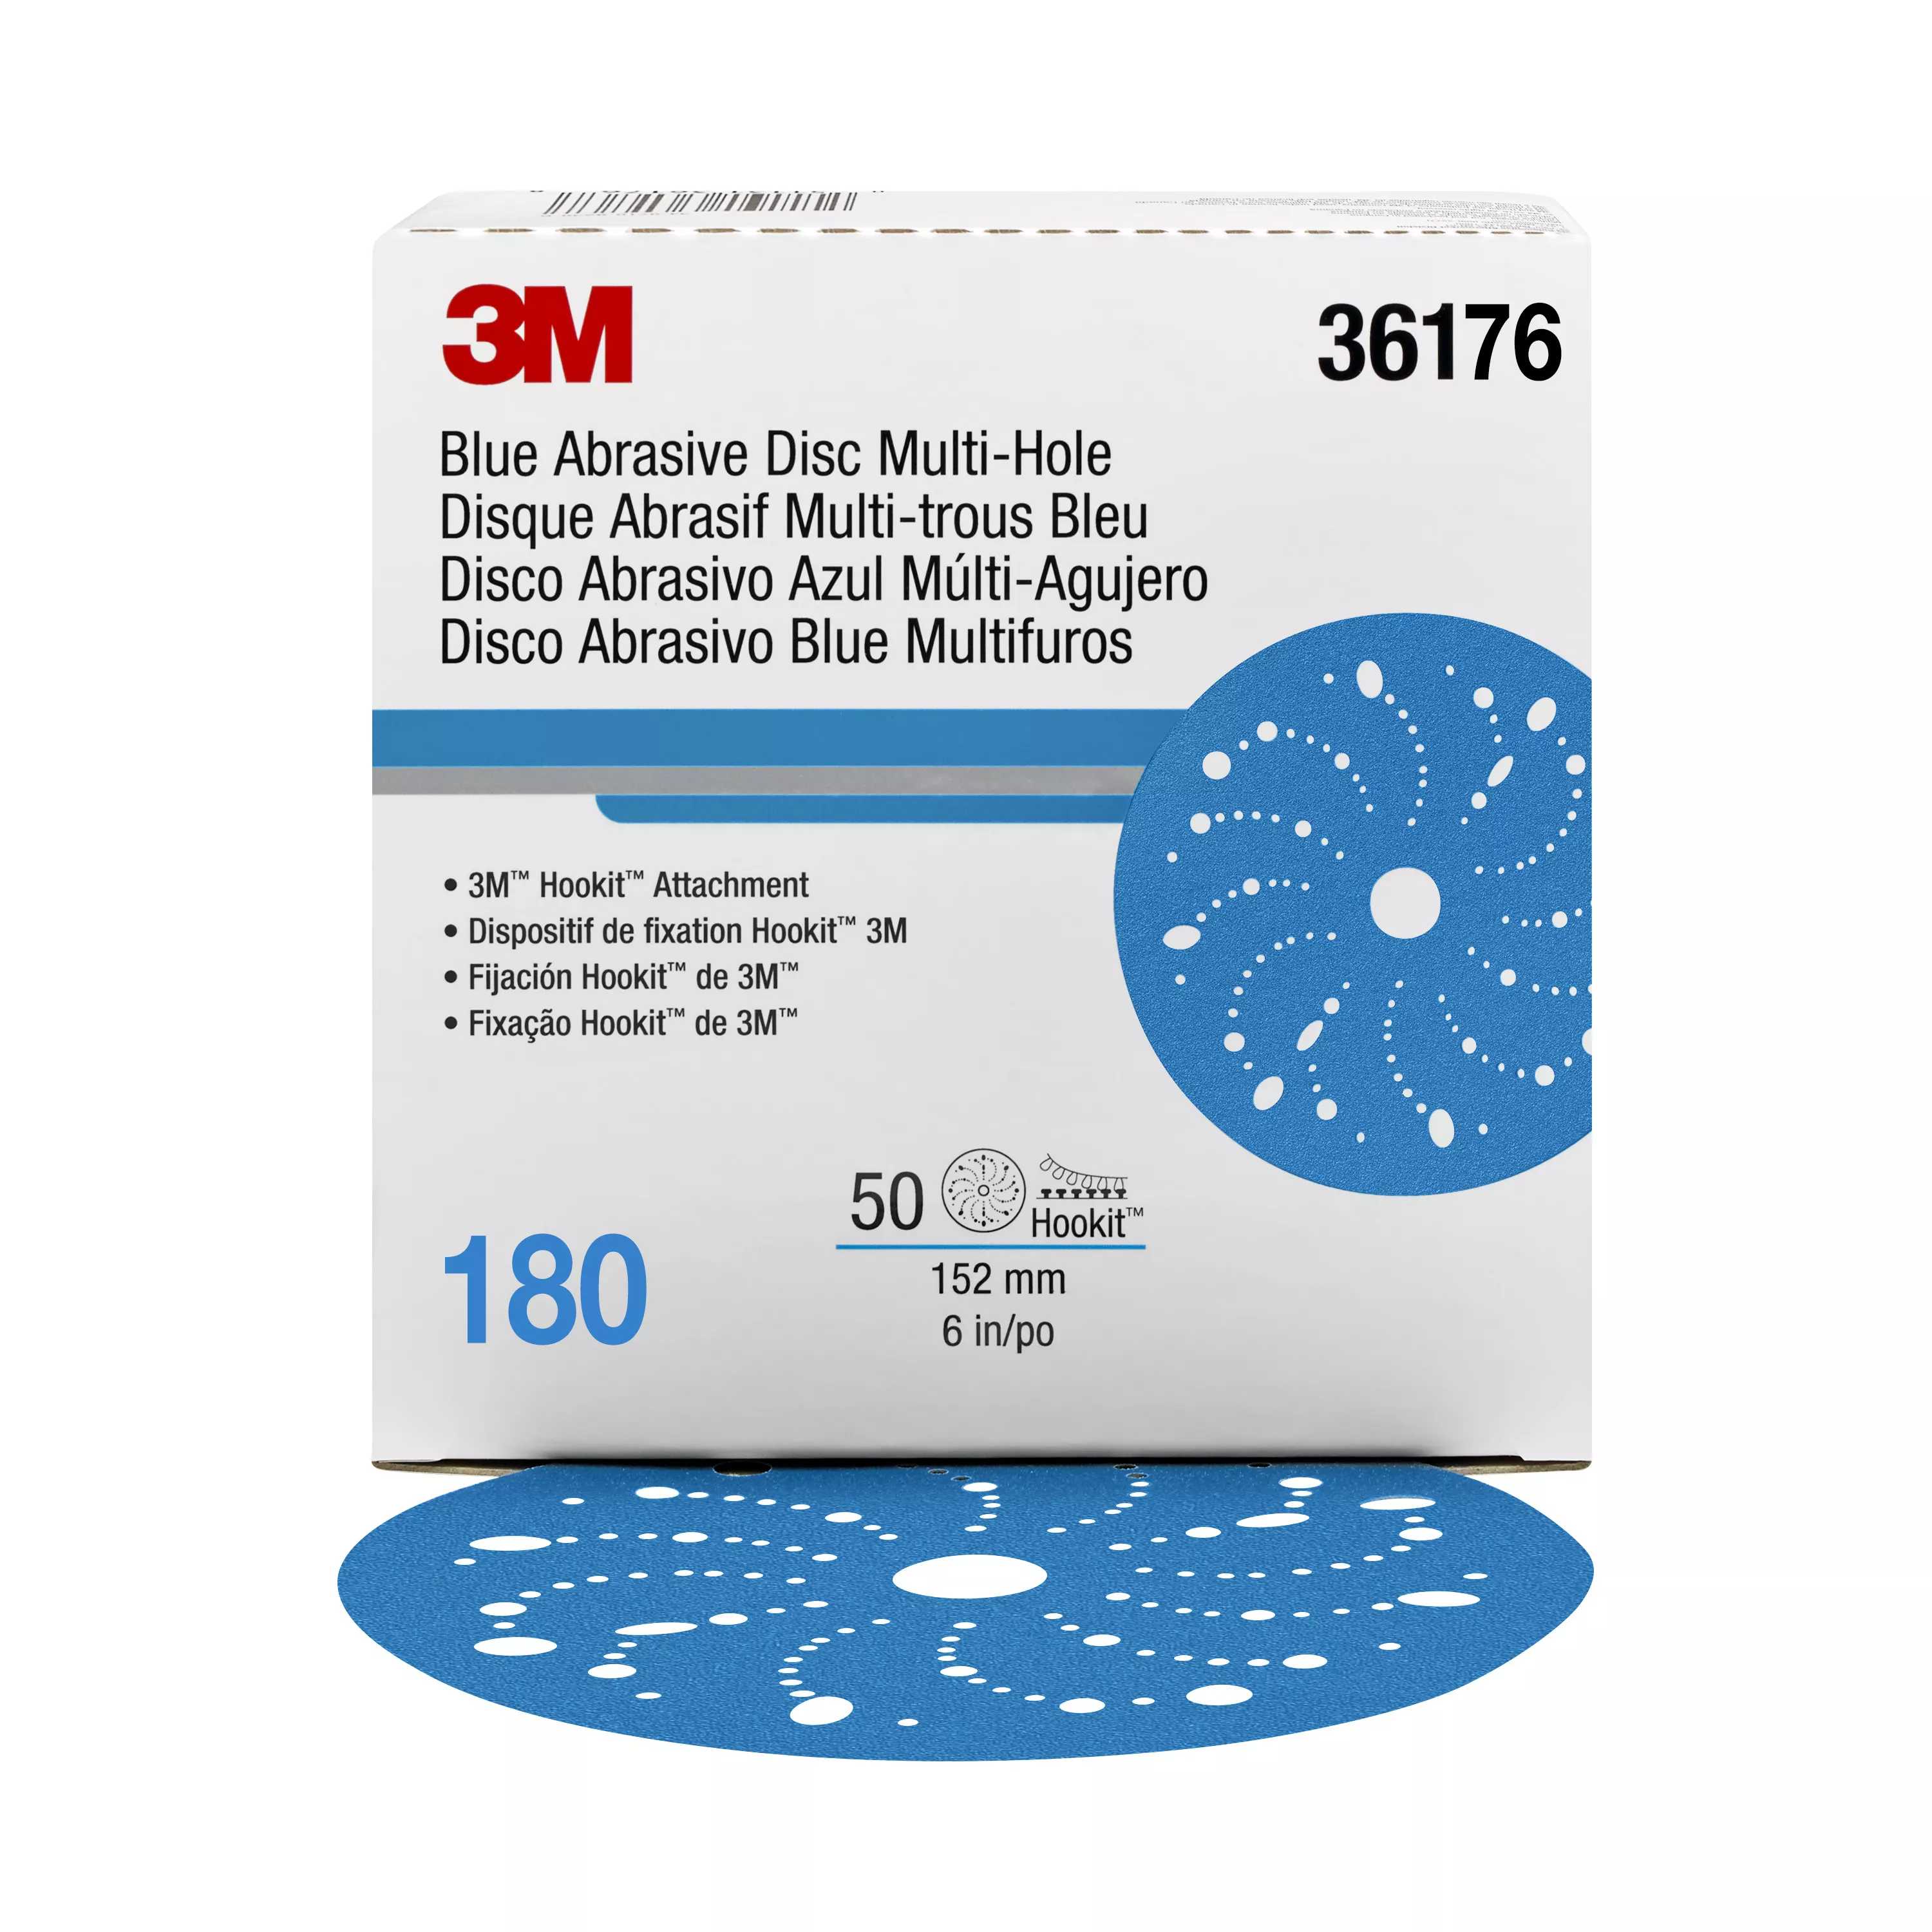 3M™ Hookit™ Blue Abrasive Disc 321U Multi-hole, 36176, 6 in, 180, 50
discs per carton, 4 cartons per case